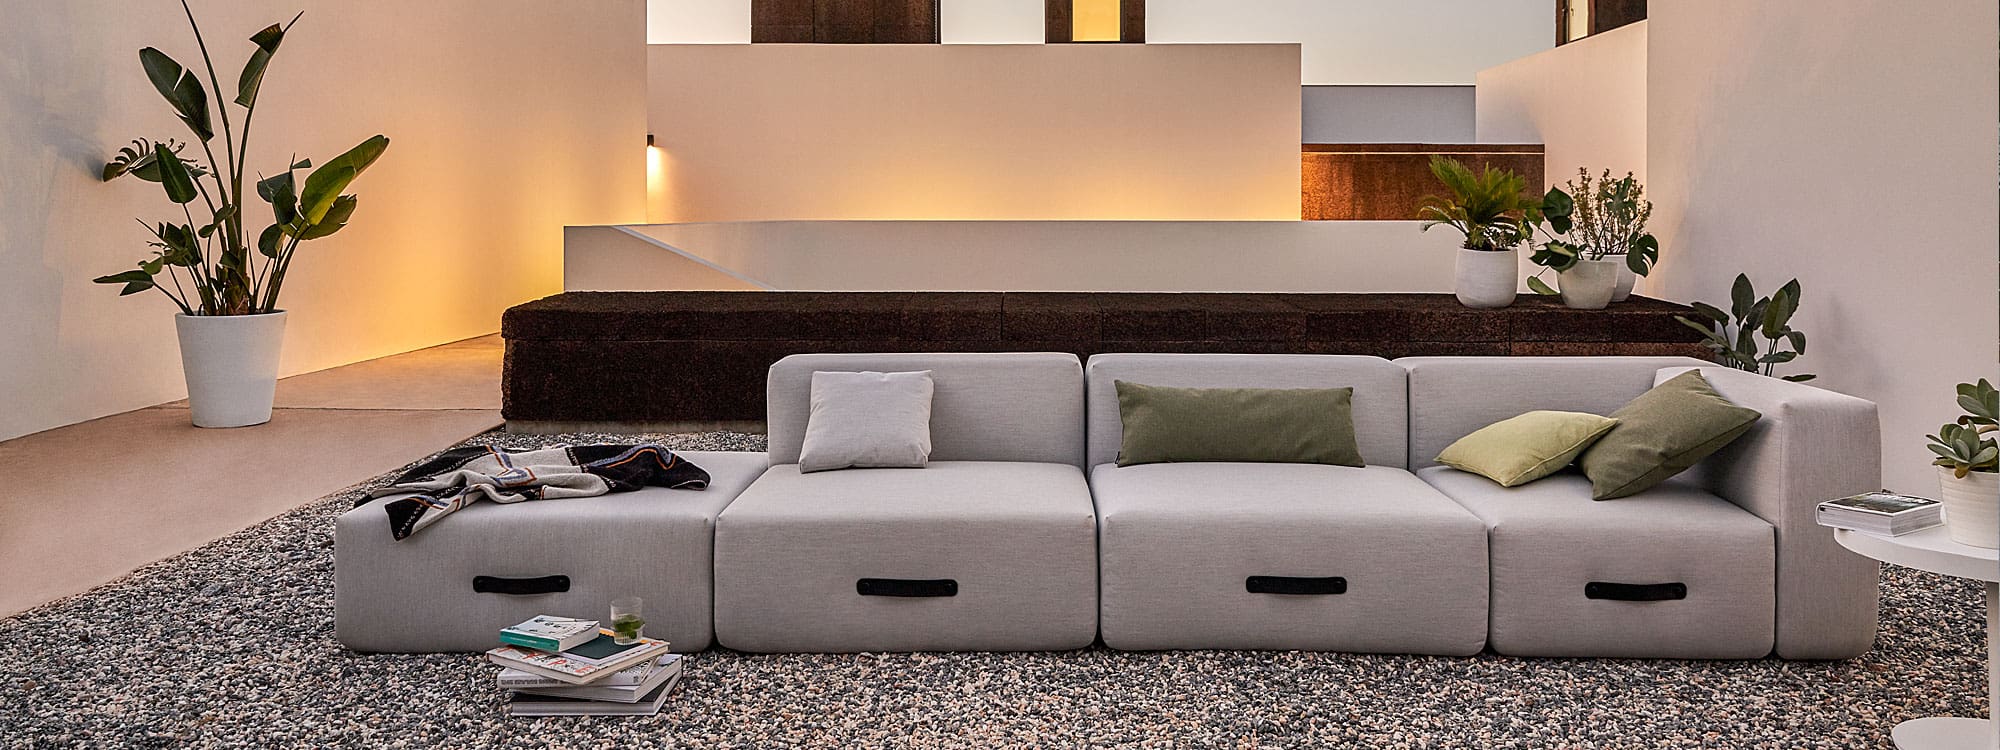 Image at dusk of Miami garden sofa in minimalist Mediterranean courtyard